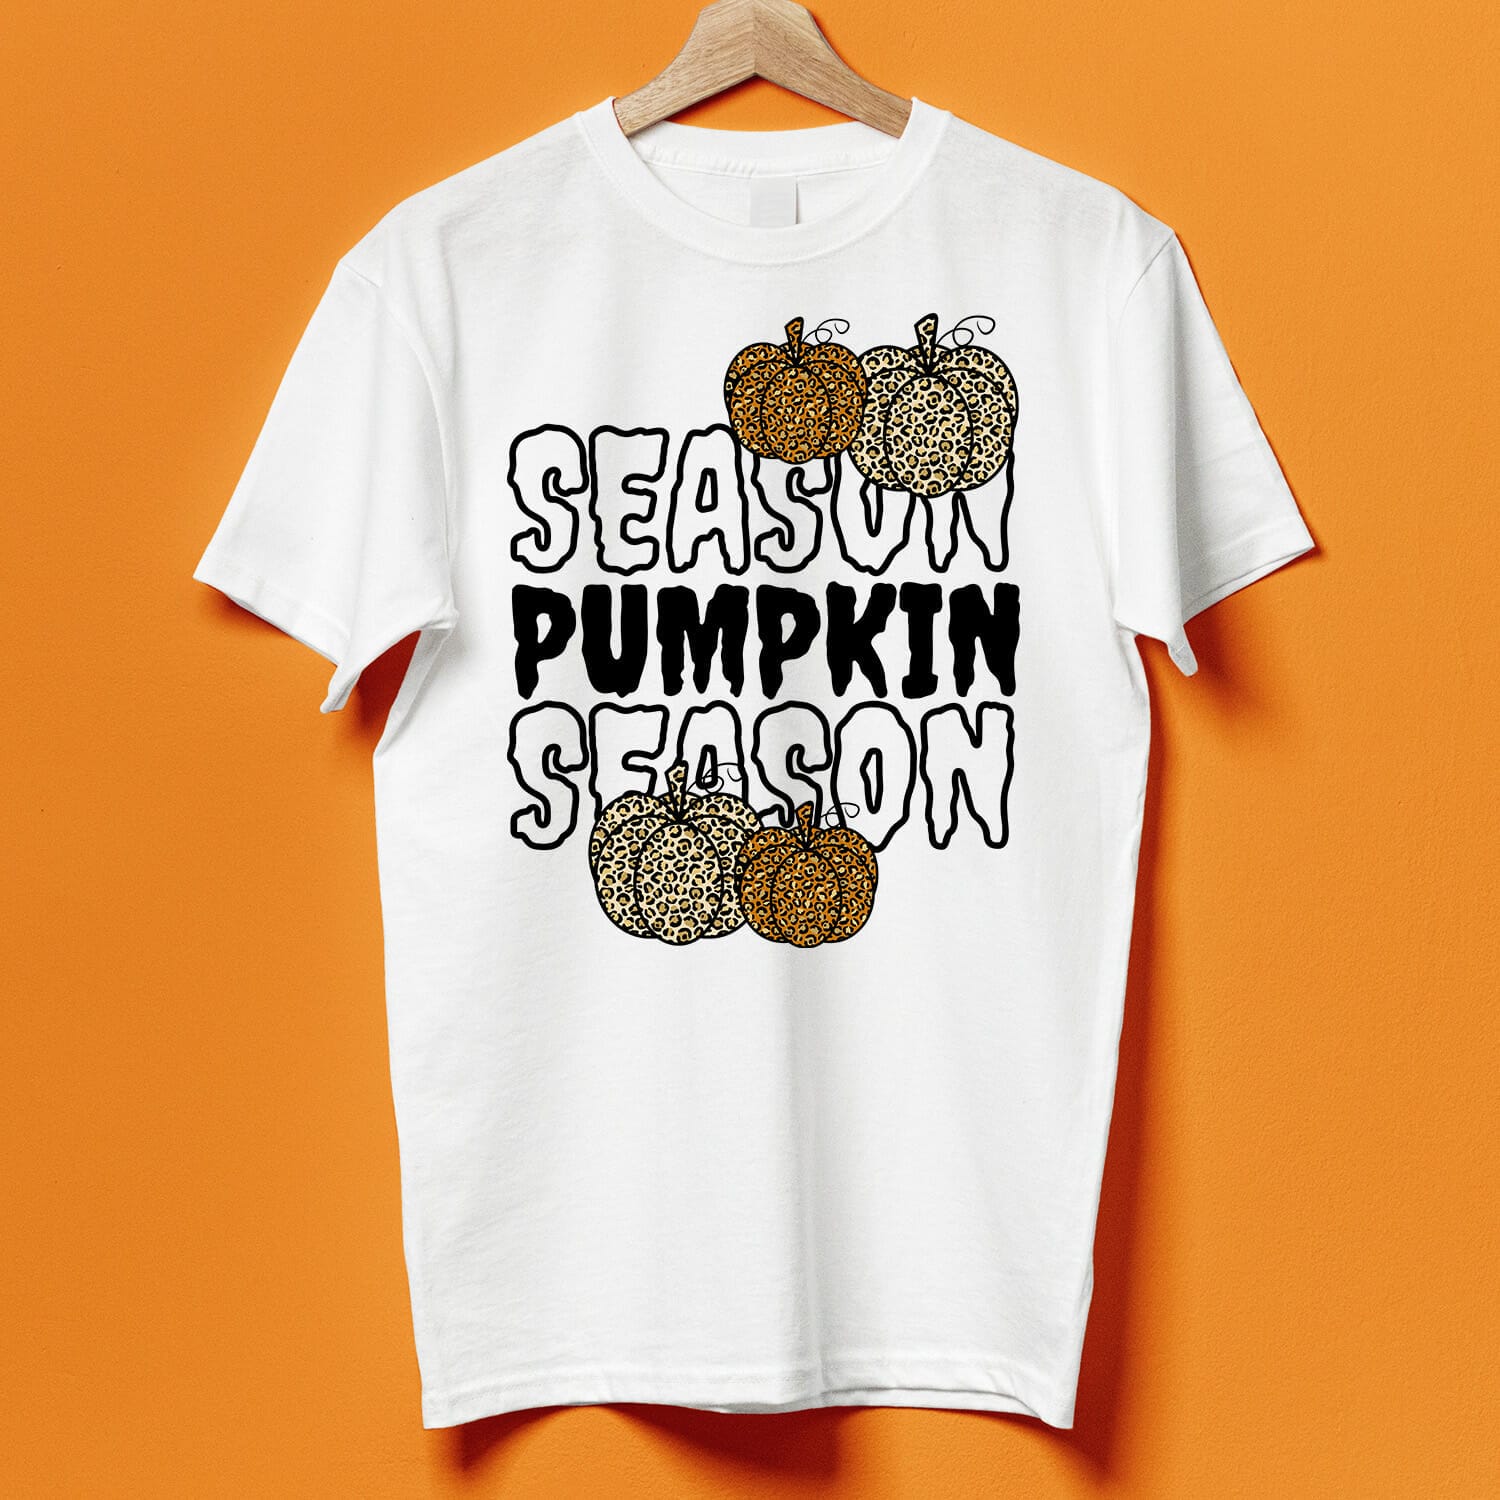 Halloween Pumpkin Season T-shirt Design